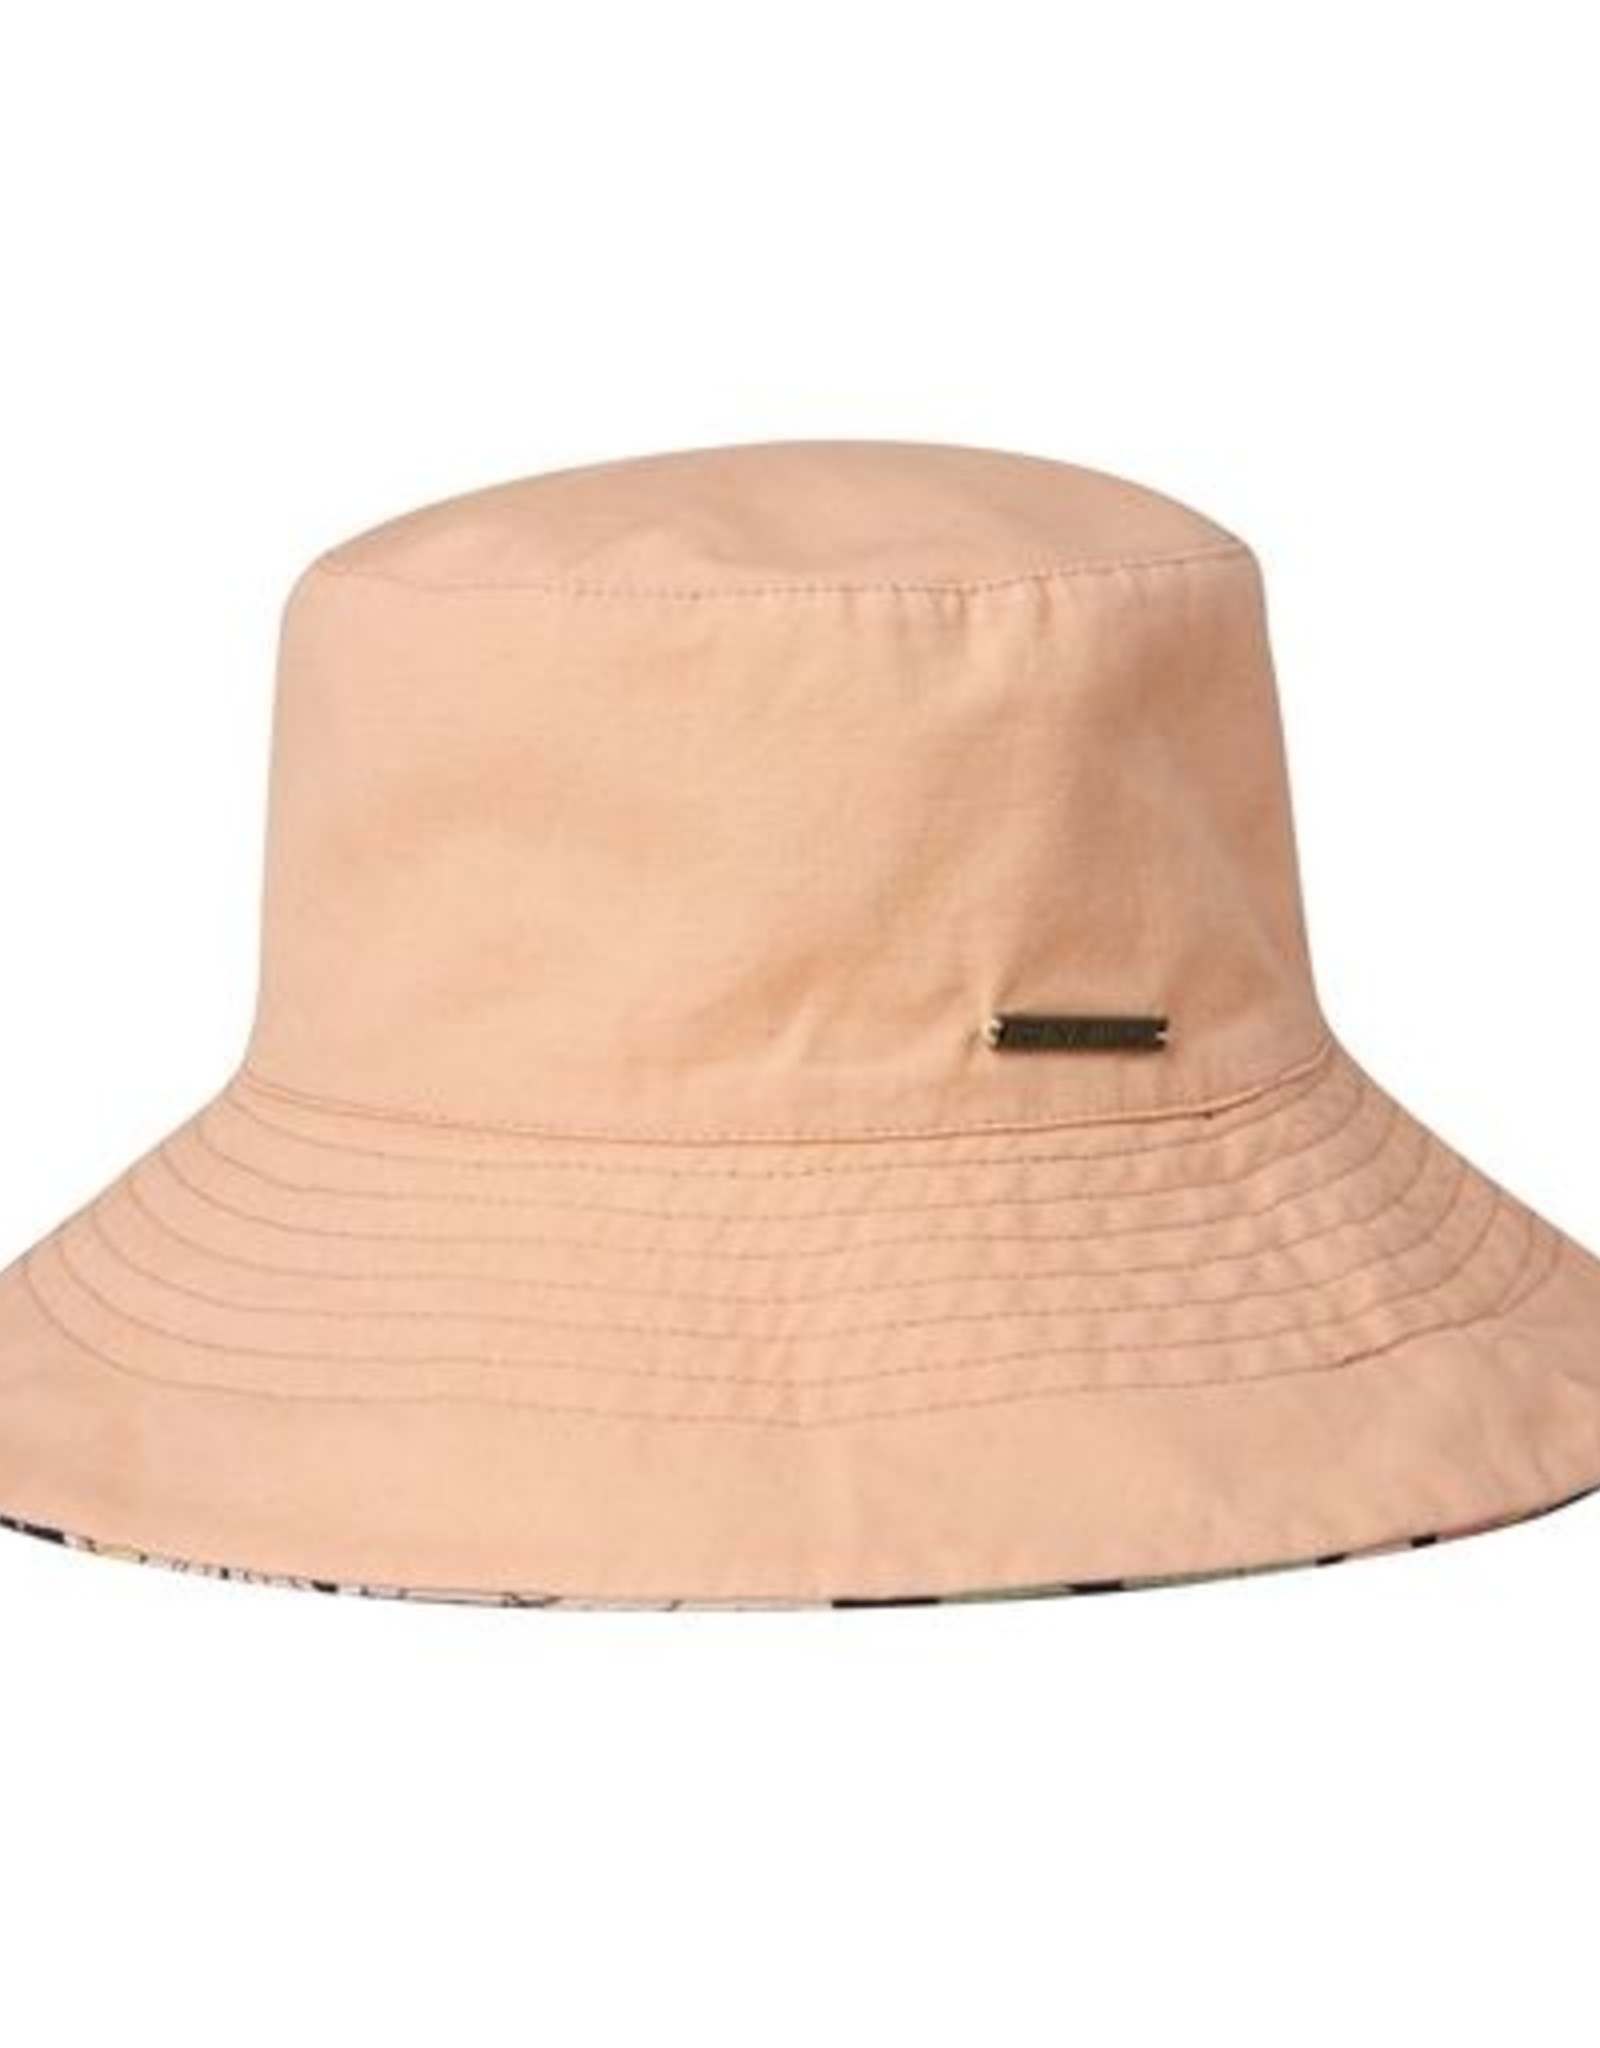 O'Neill Vara Hat